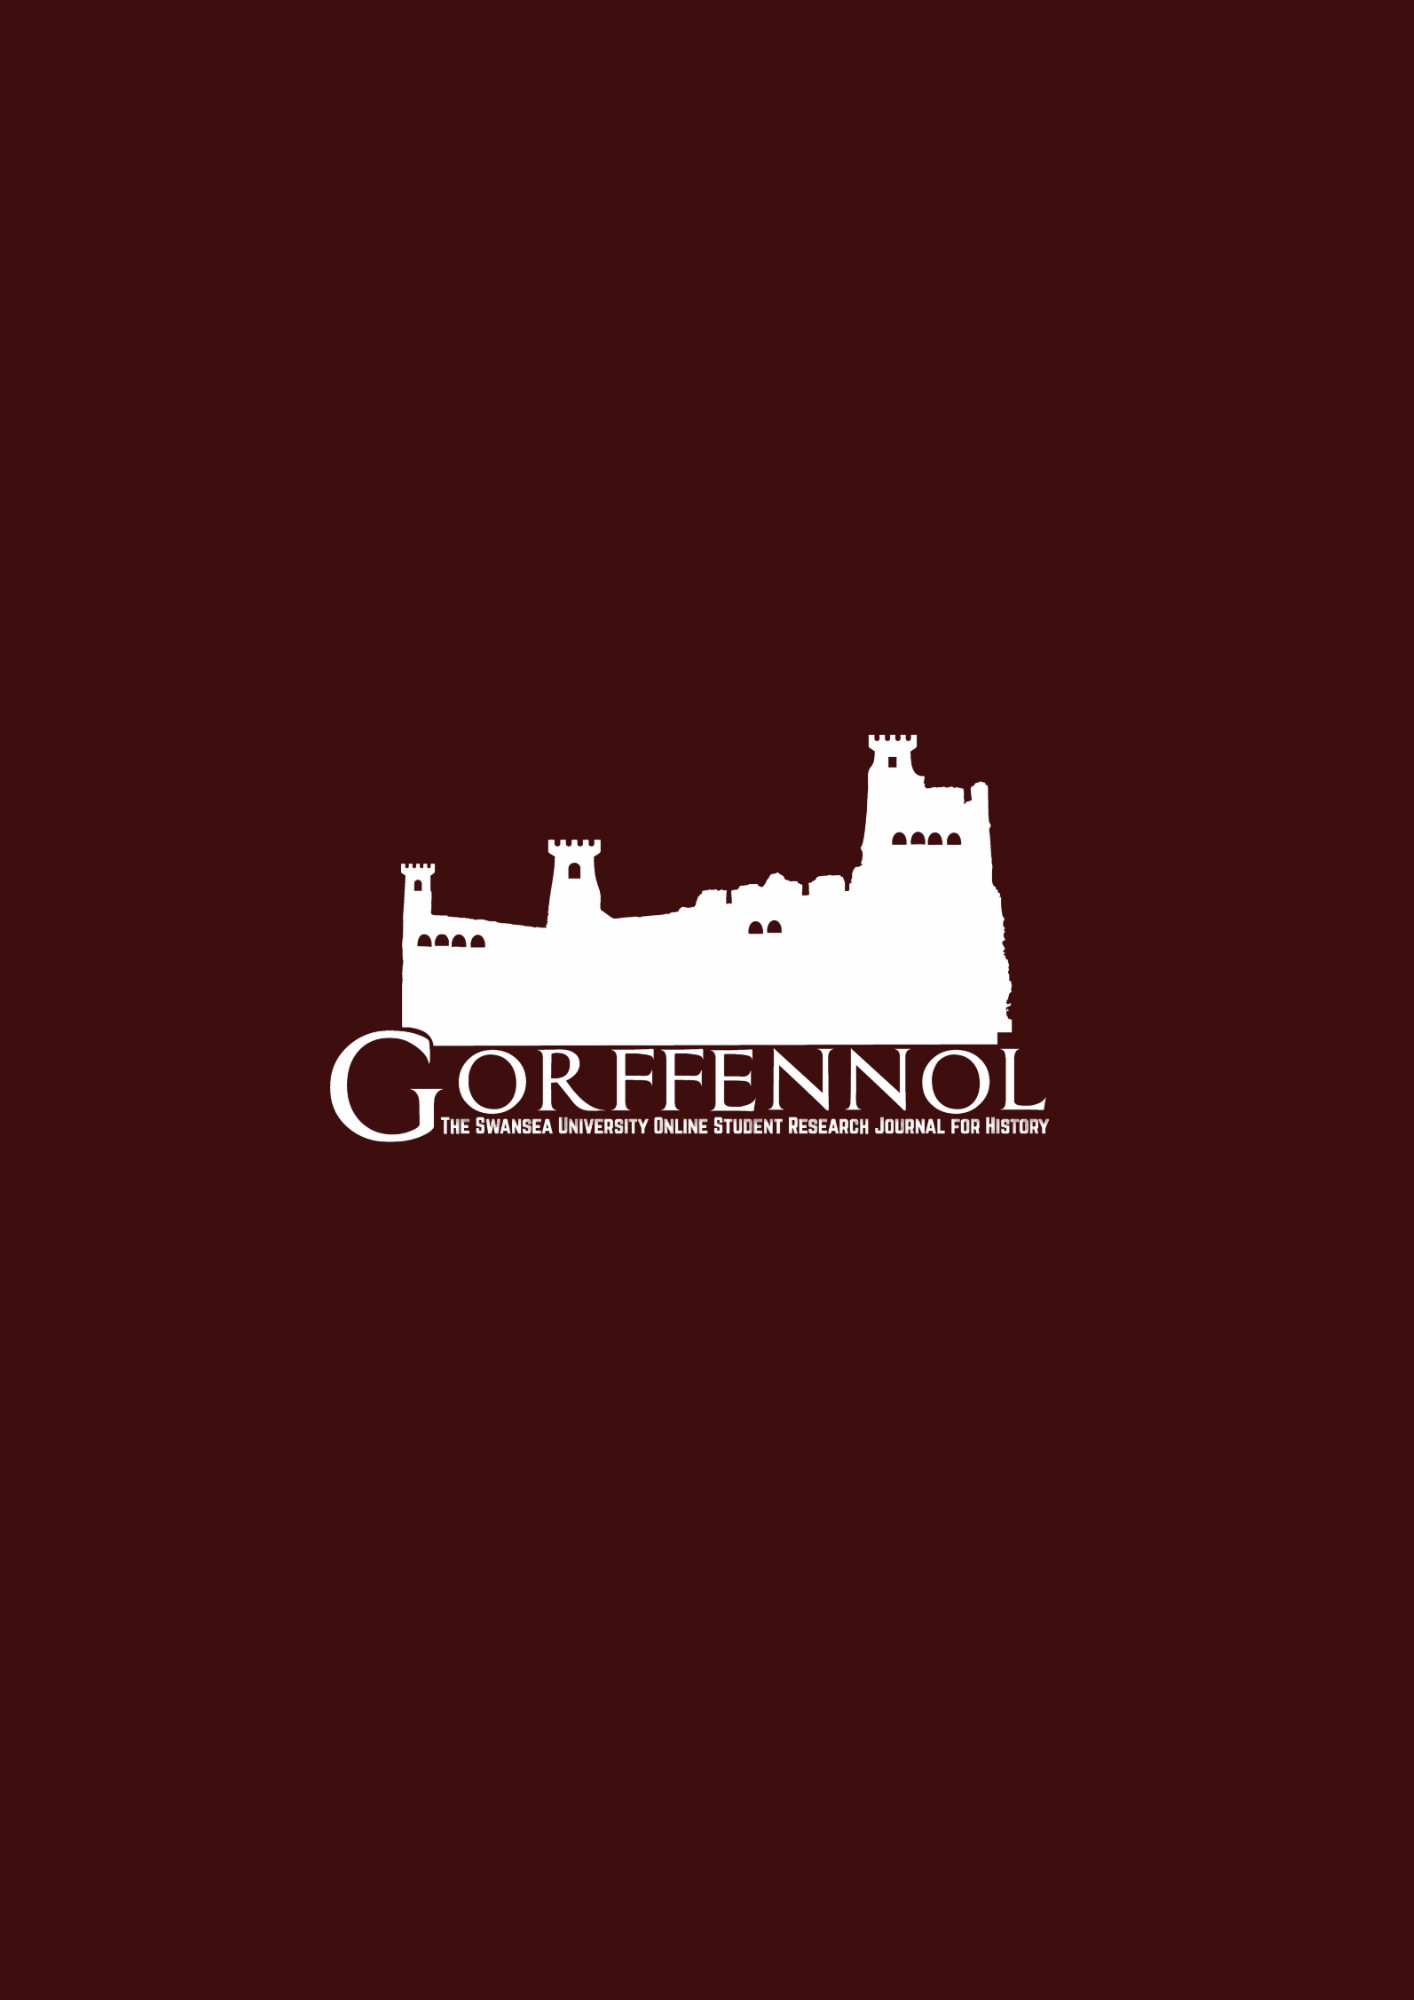 Gorffennol logo